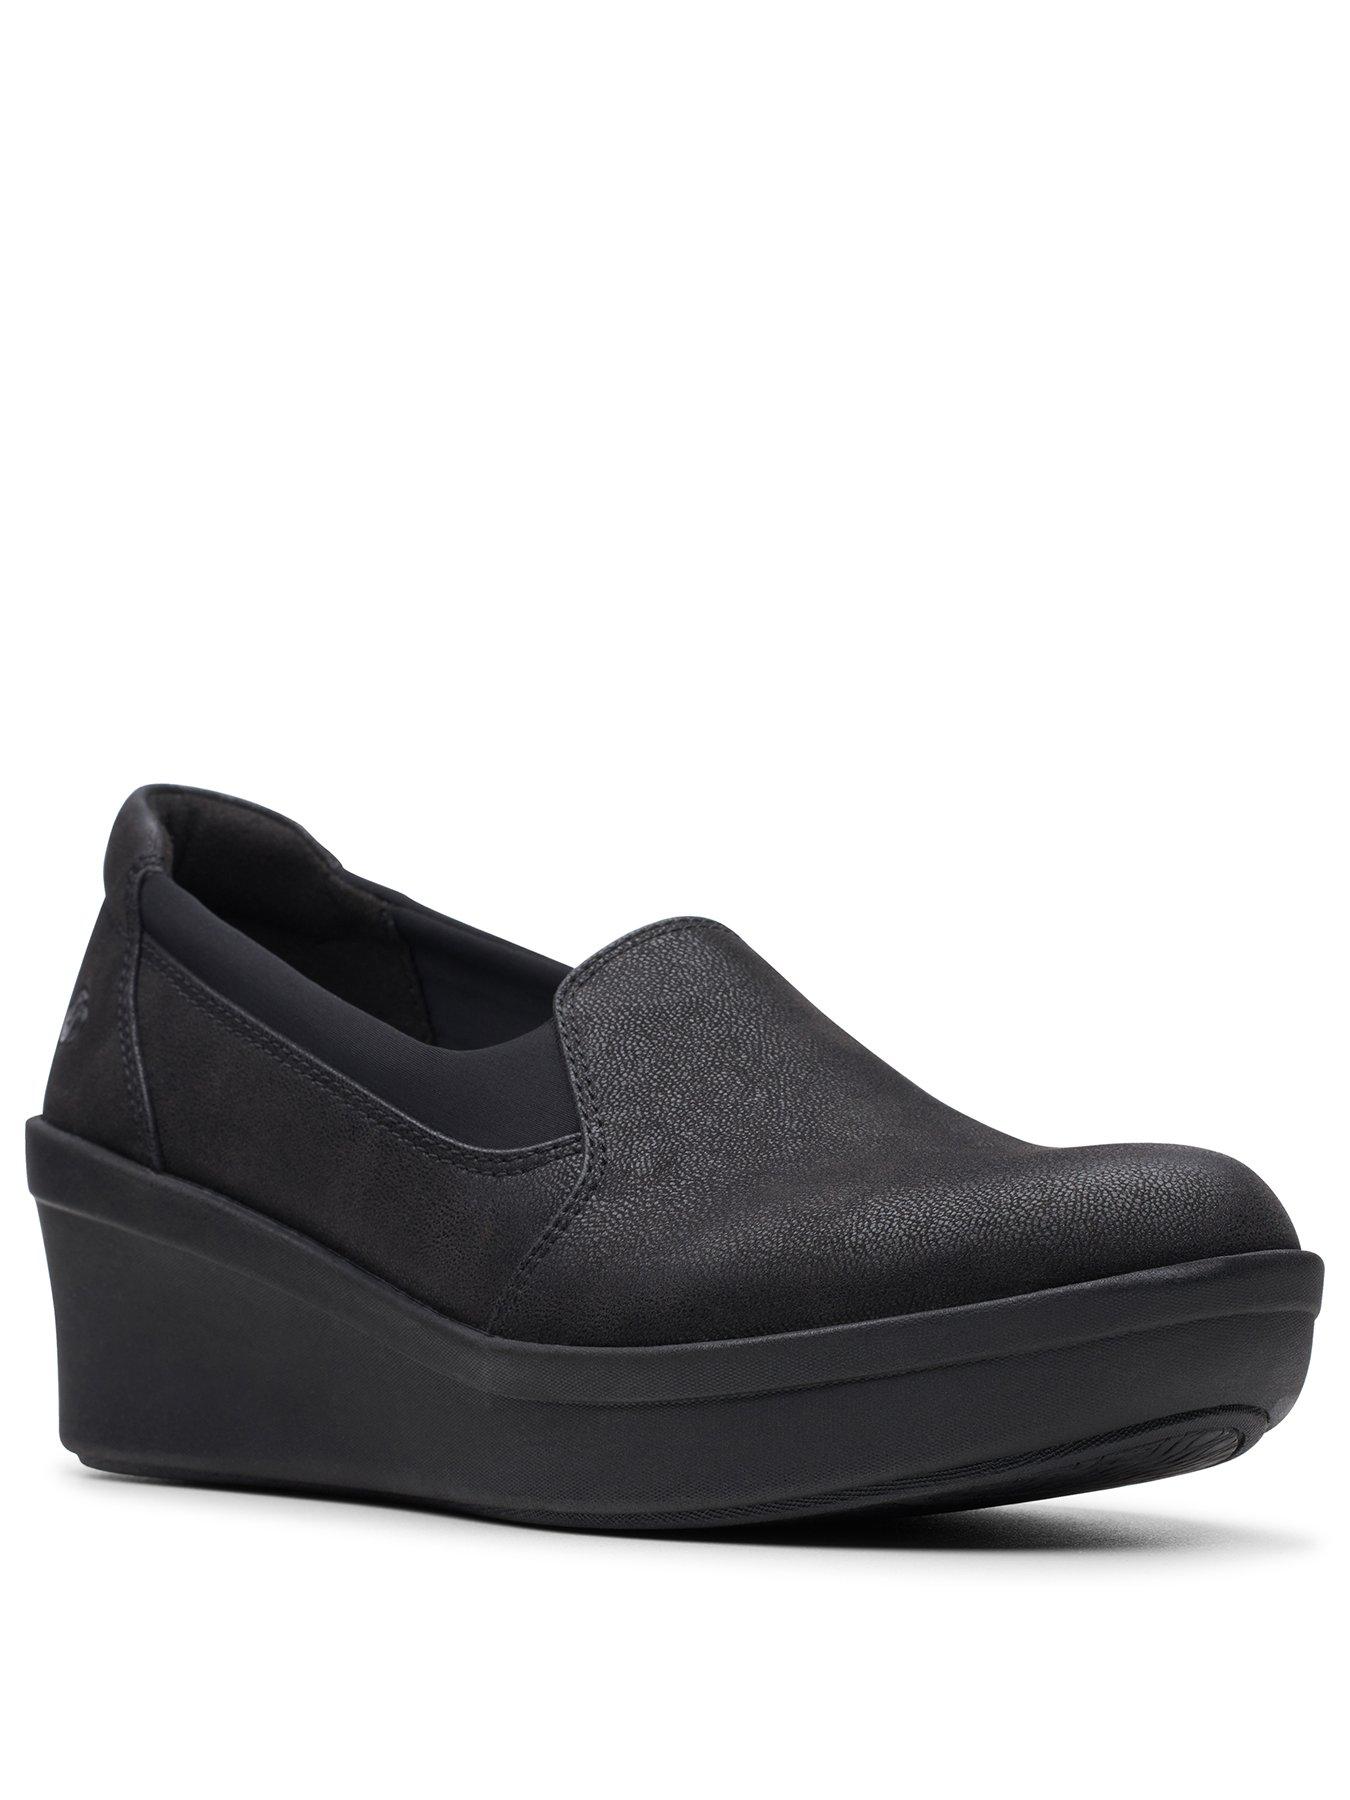 black wedge shoes uk